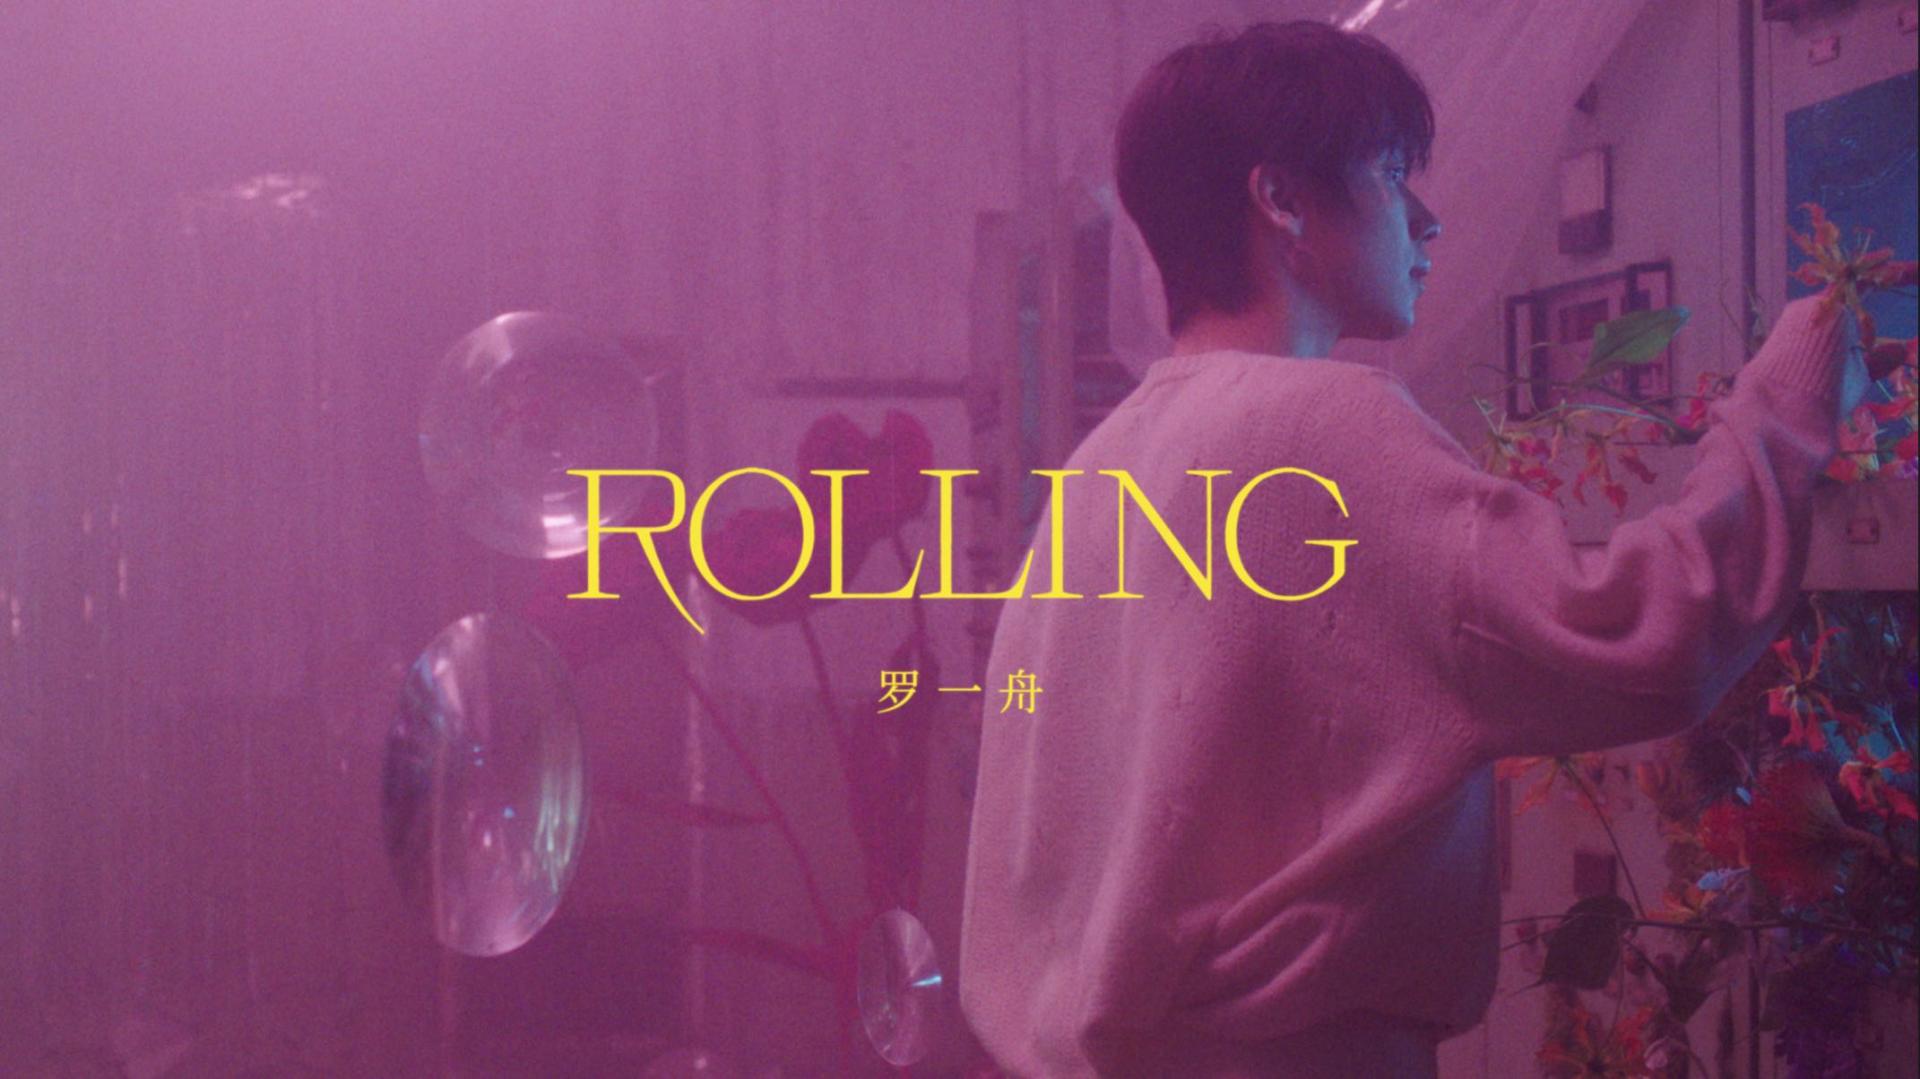 罗一舟 | Rolling | Official Music Video